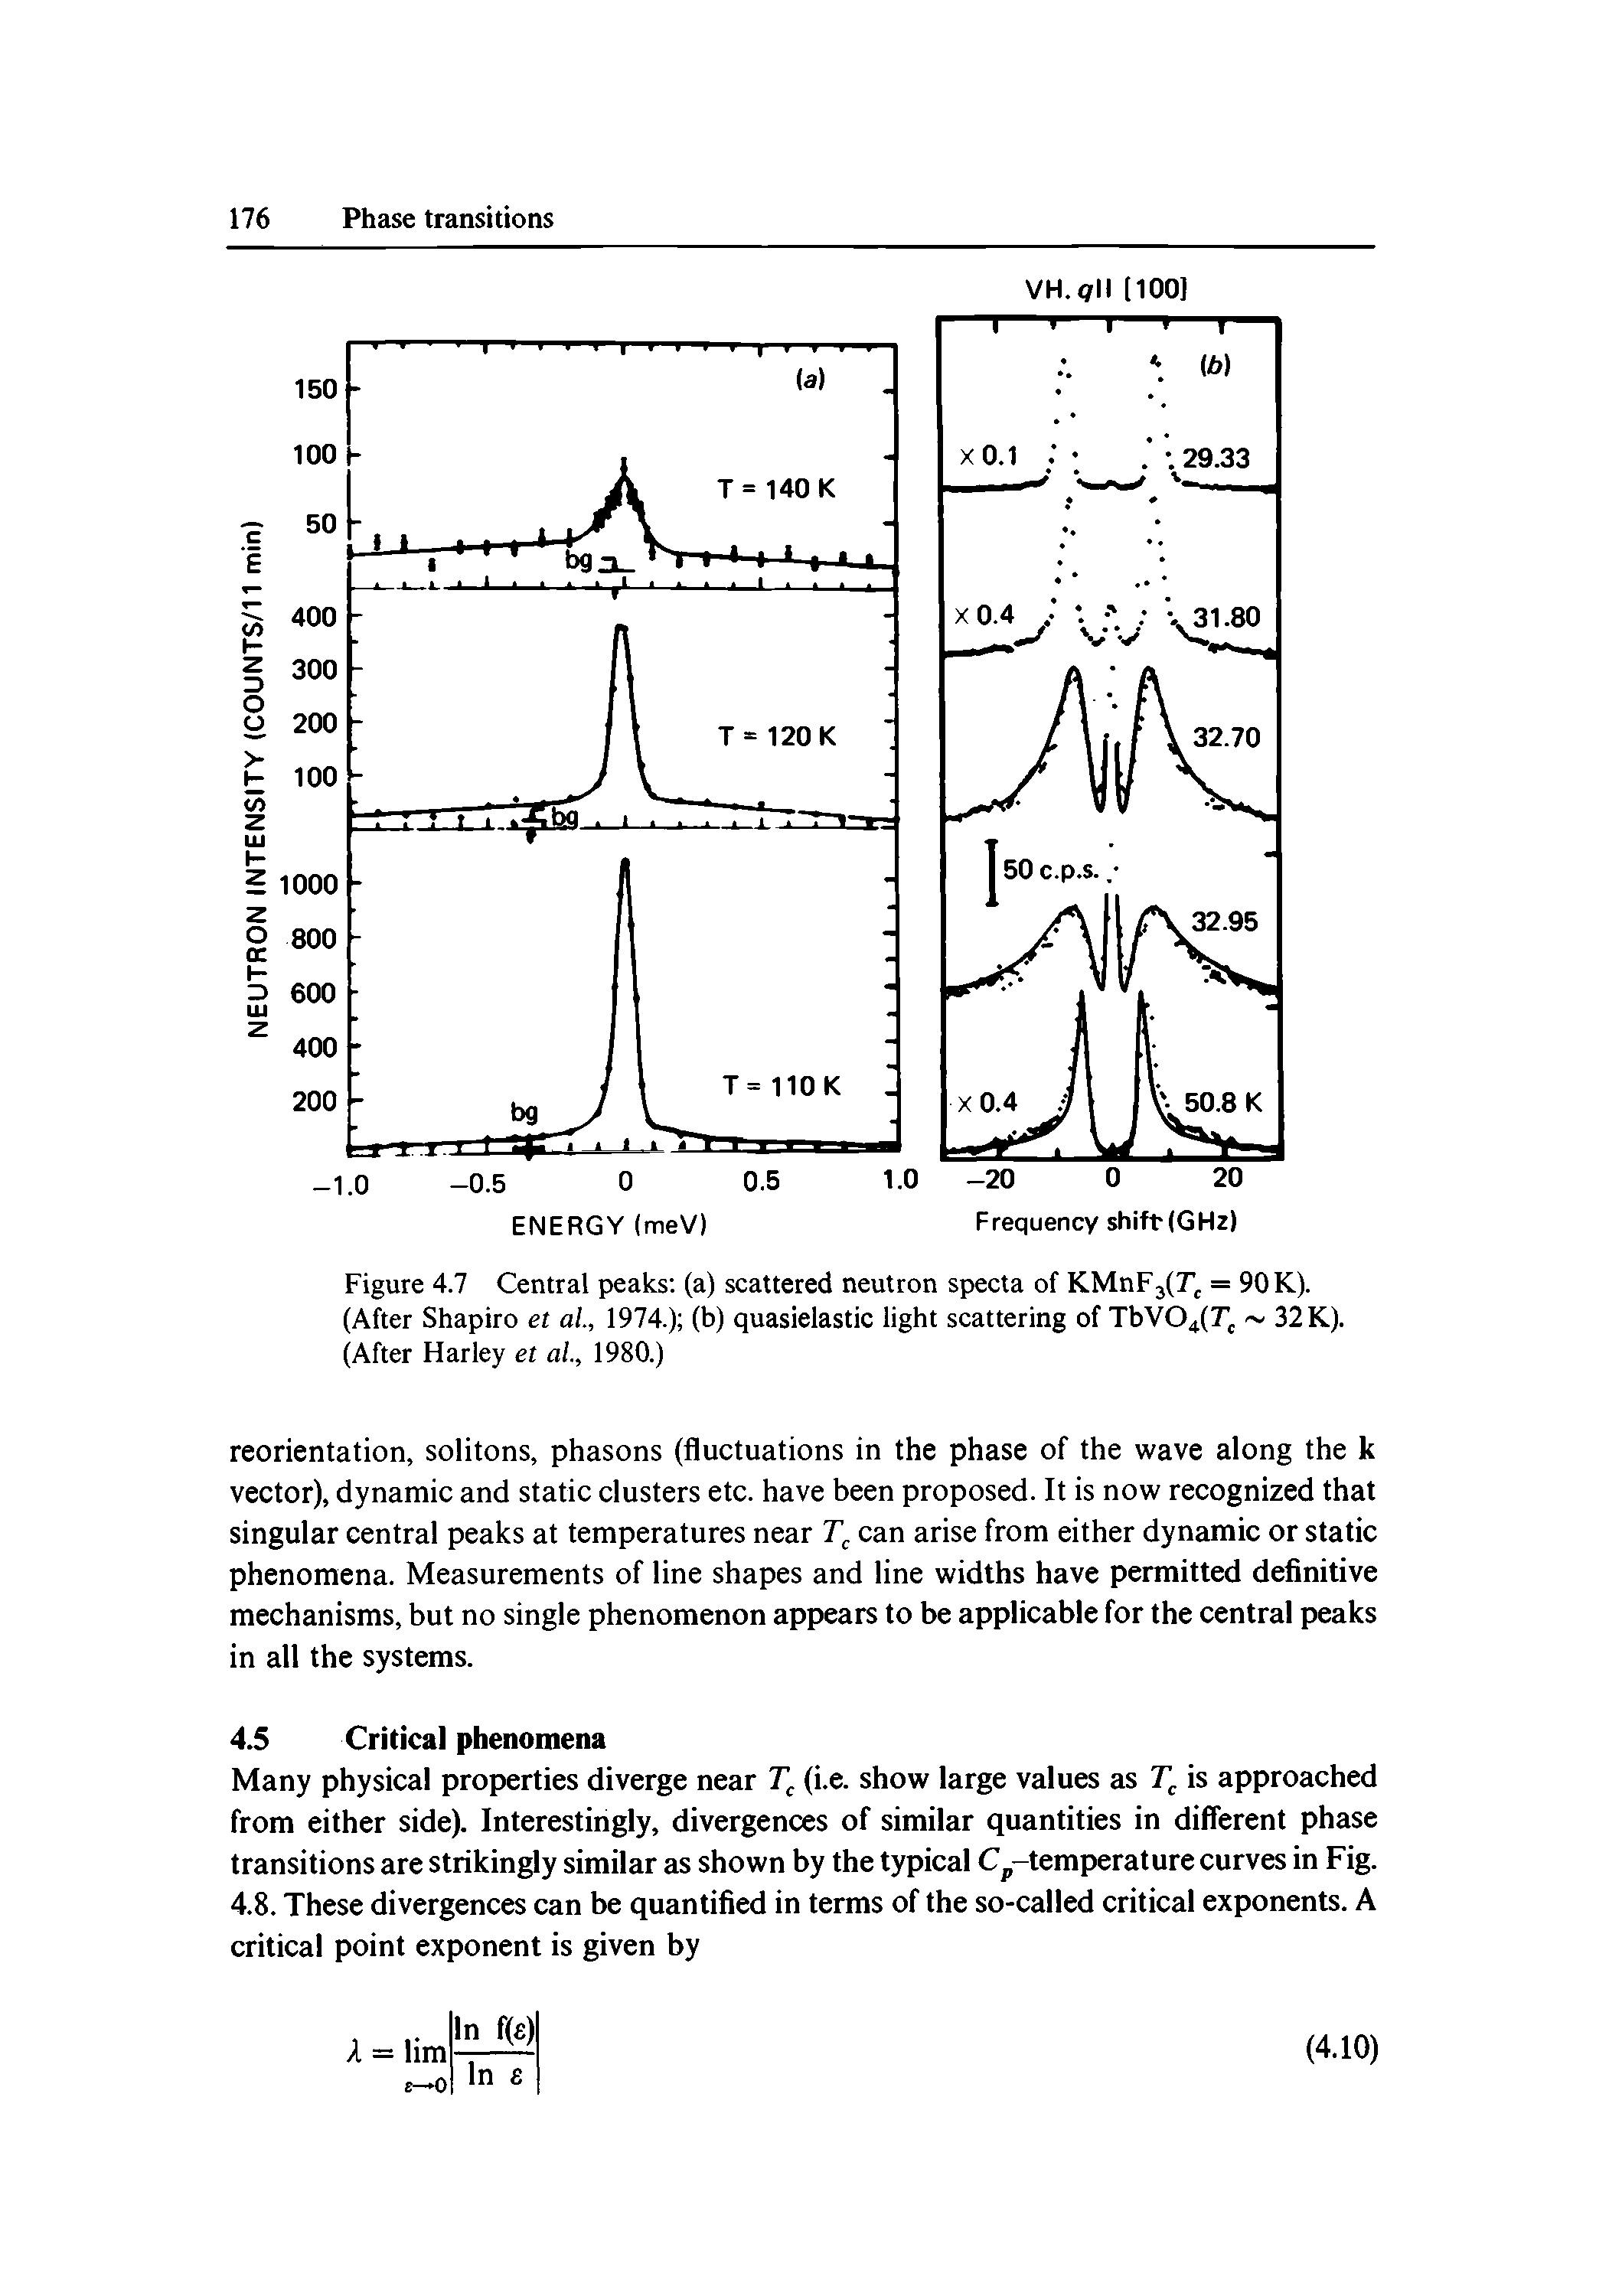 Figure 4.7 Central peaks (a) scattered neutron specta of KMnF3(Tj = 90 K). (After Shapiro et al, 1974.) (b) quasielastic light scattering of TbV04(Tj 32 K). (After Harley et al., 1980.)...